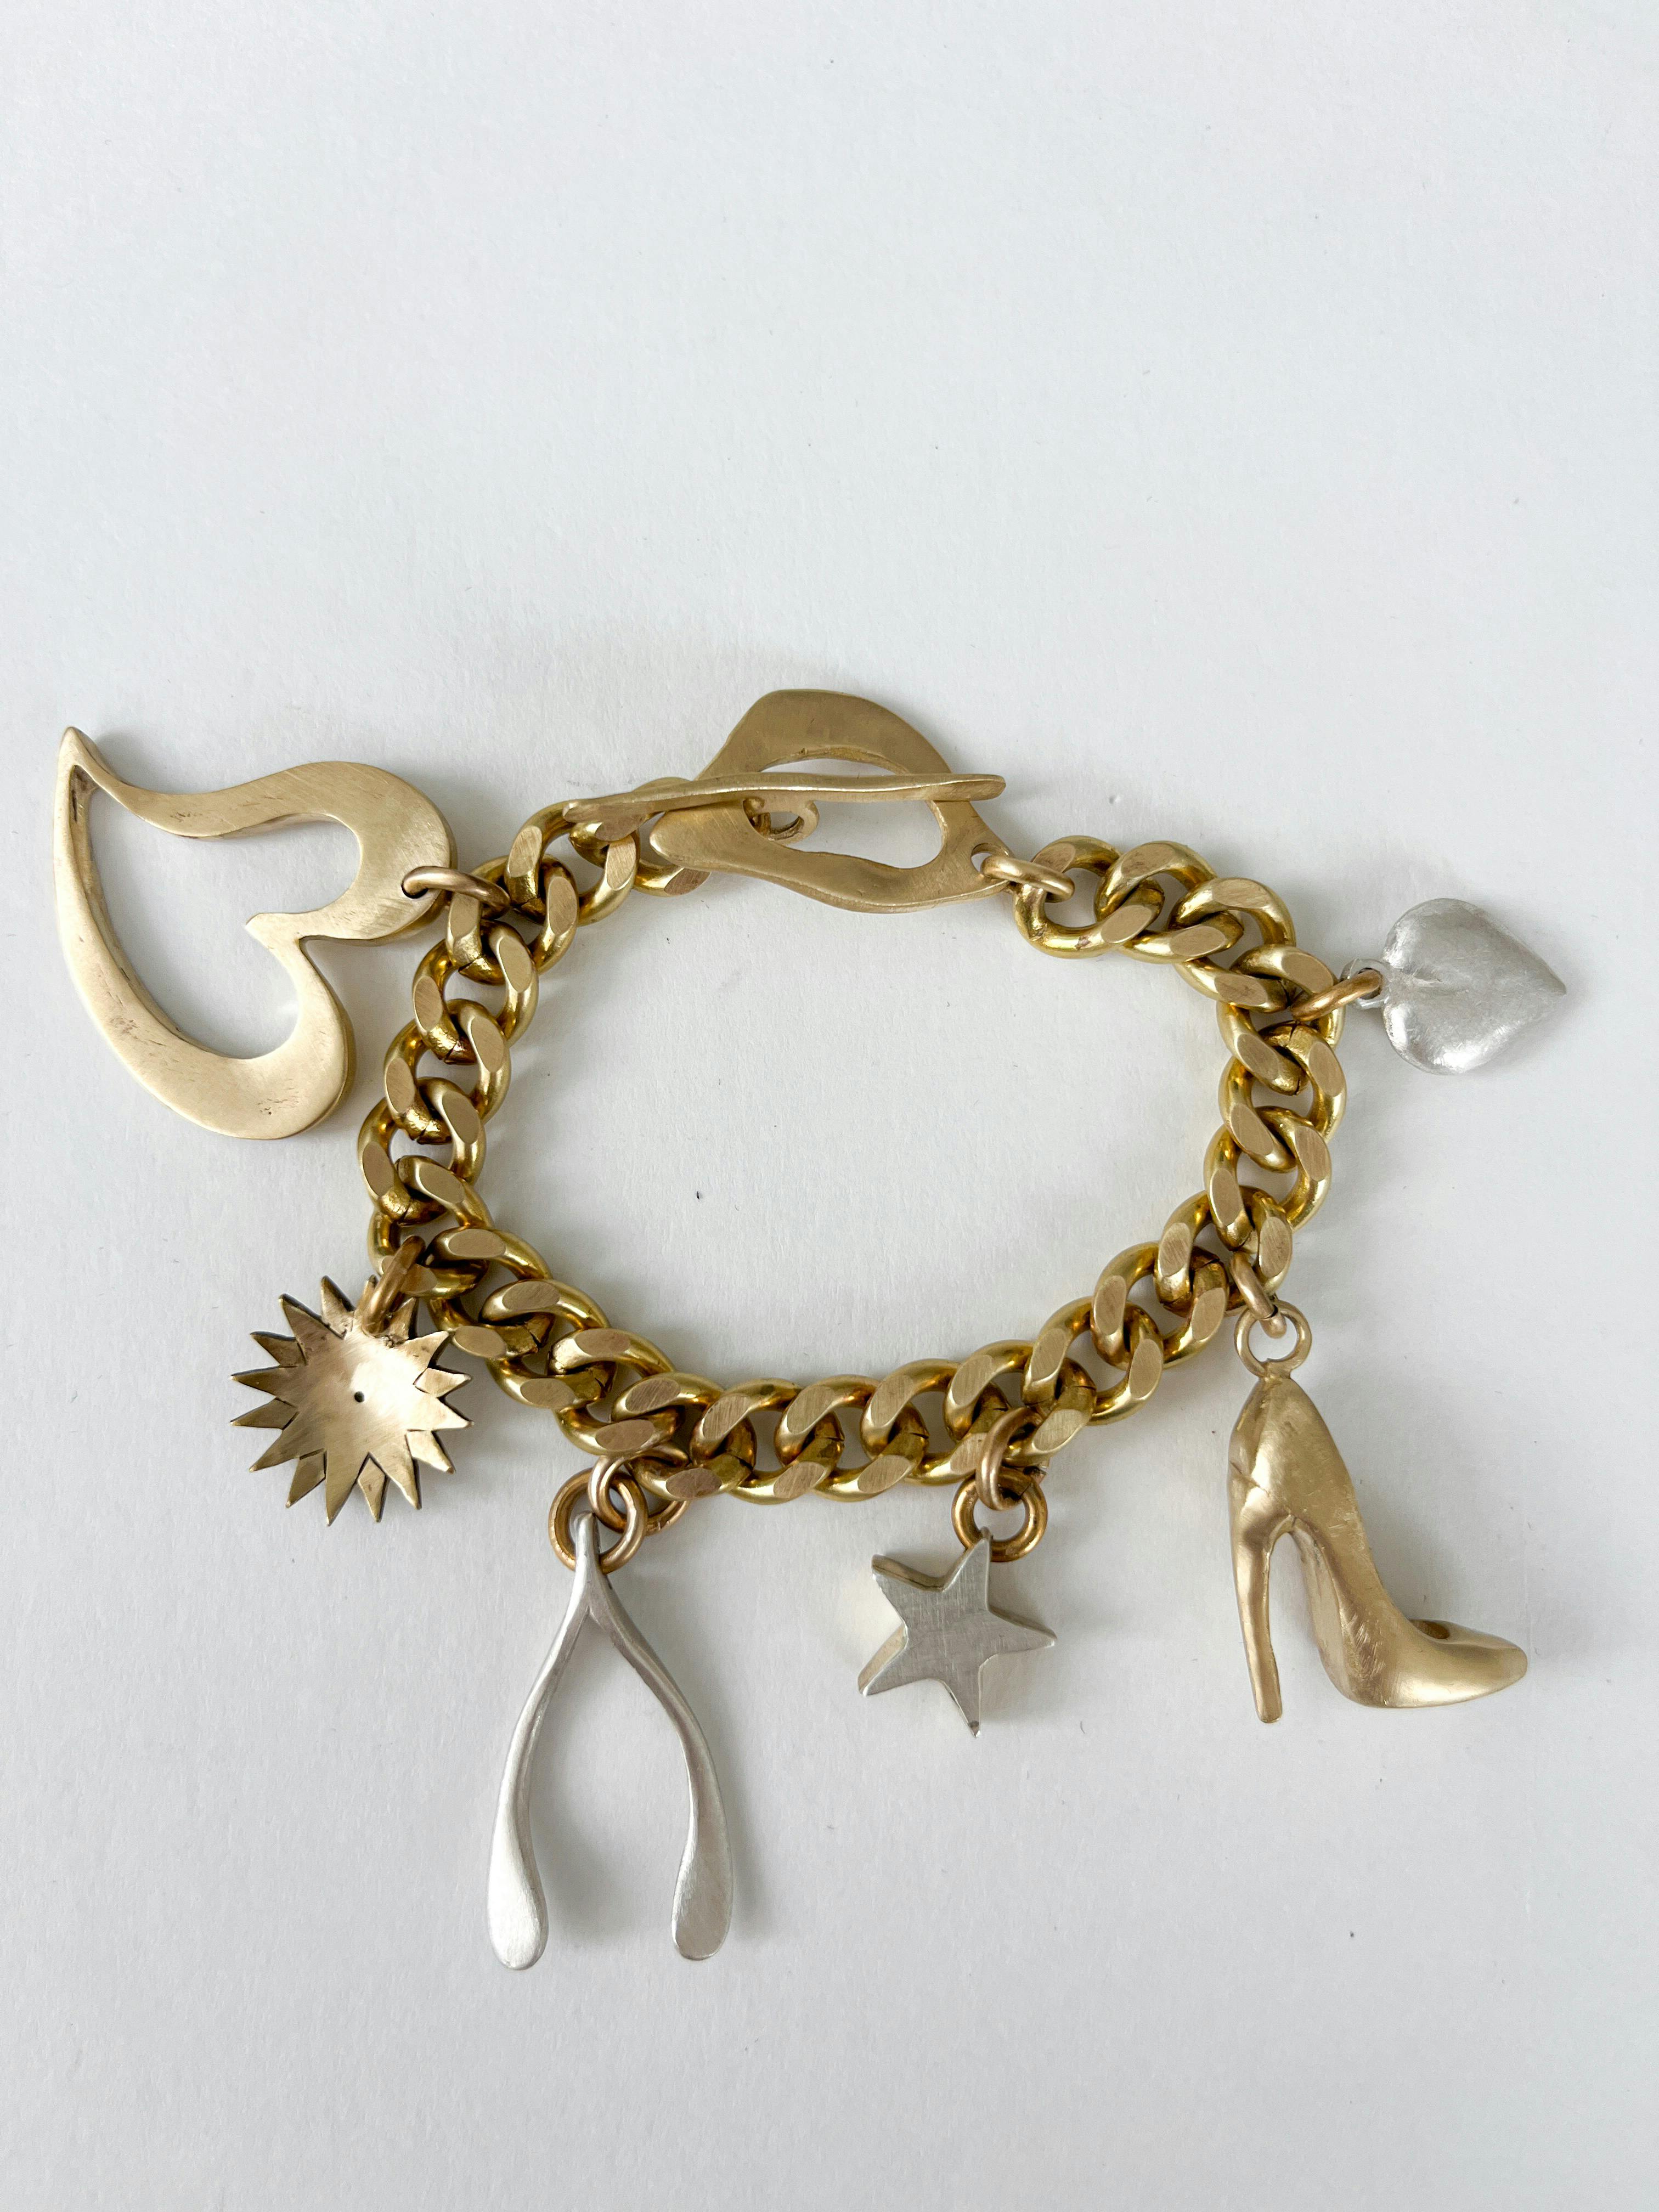 JG charm bracelet, a product by Jenny Greco Jewellery